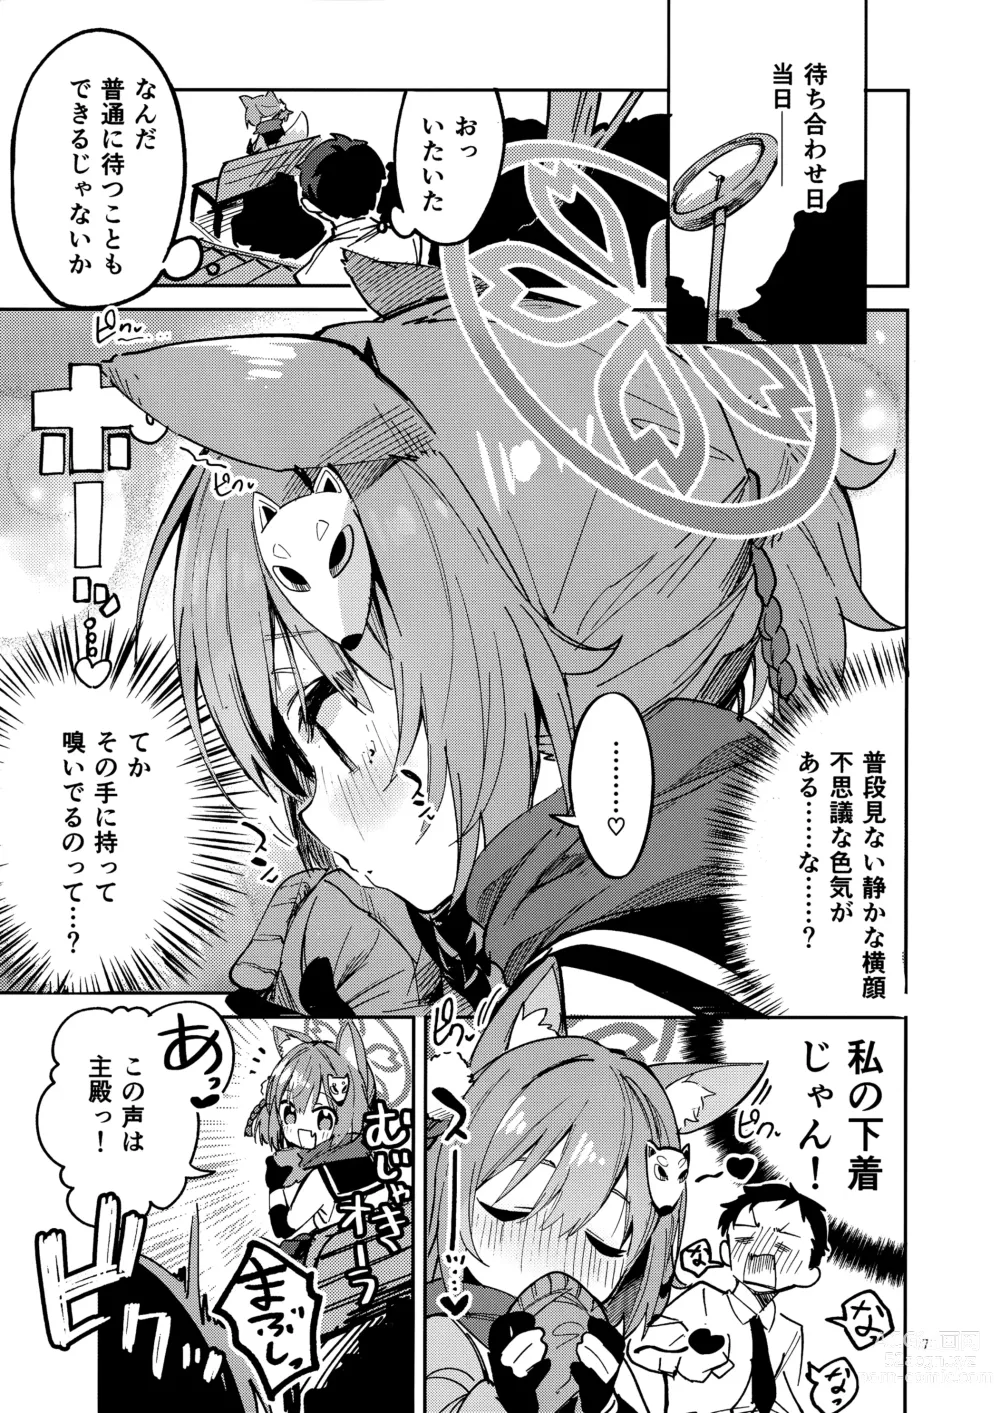 Page 6 of doujinshi Me o Hanasenai Seito